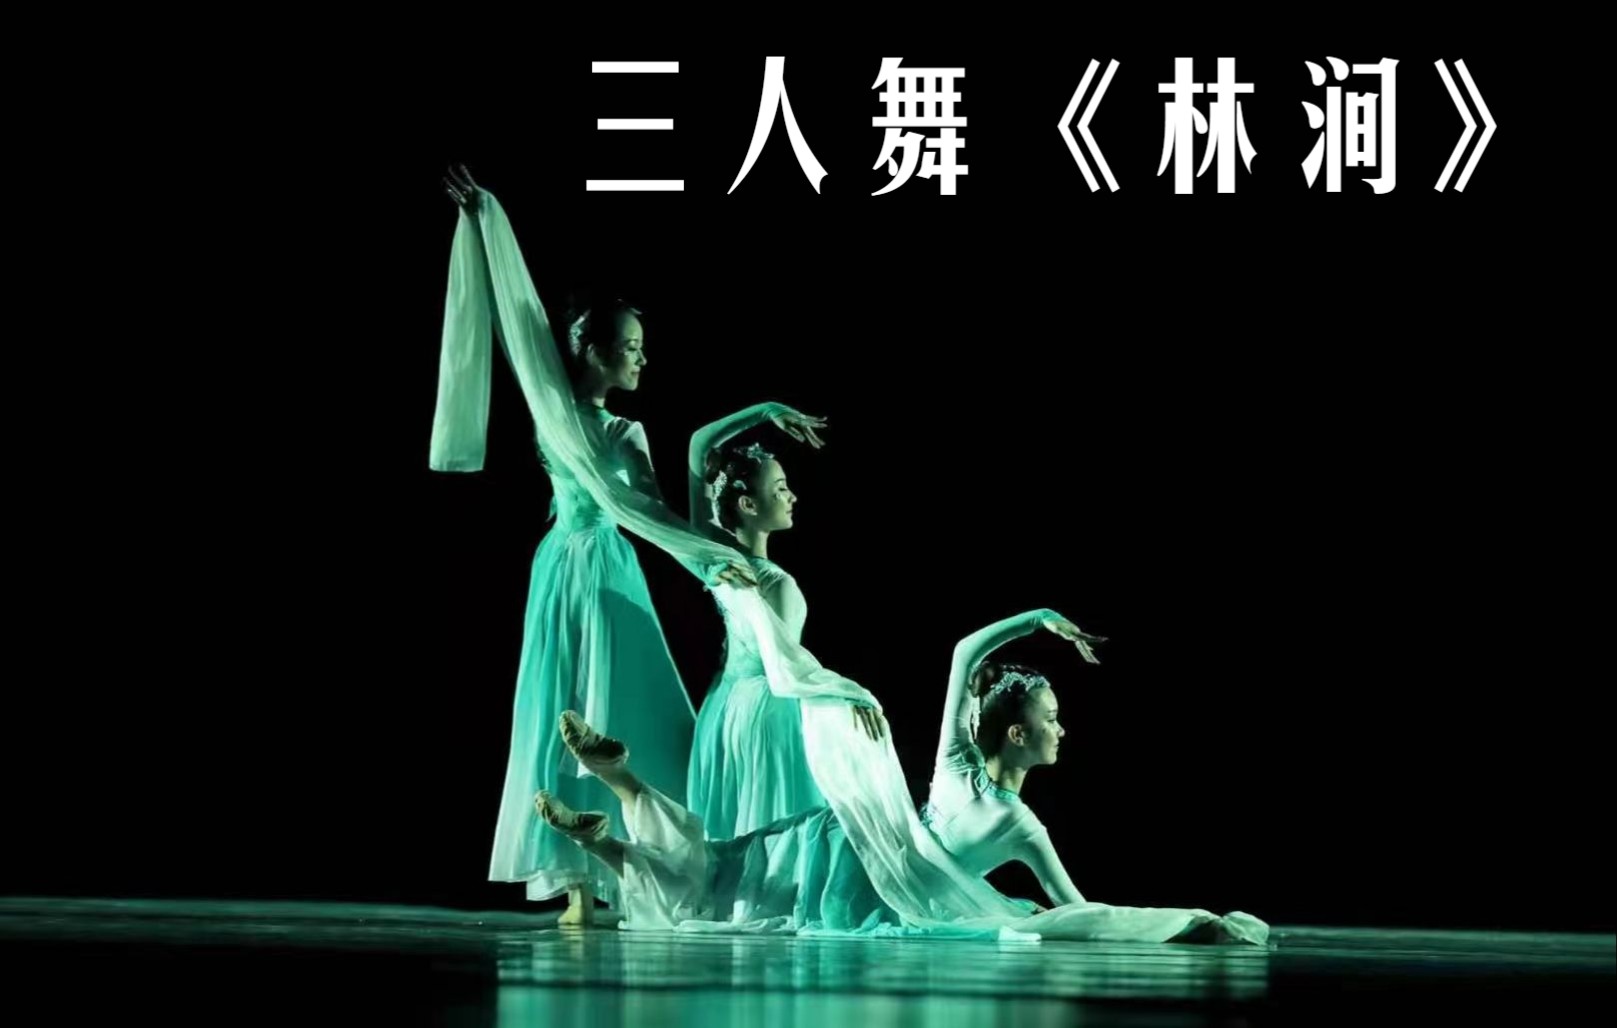 女子三人舞《林涧》河南省专业舞蹈大赛二等奖 编导:刘青璠,袁光辉,李